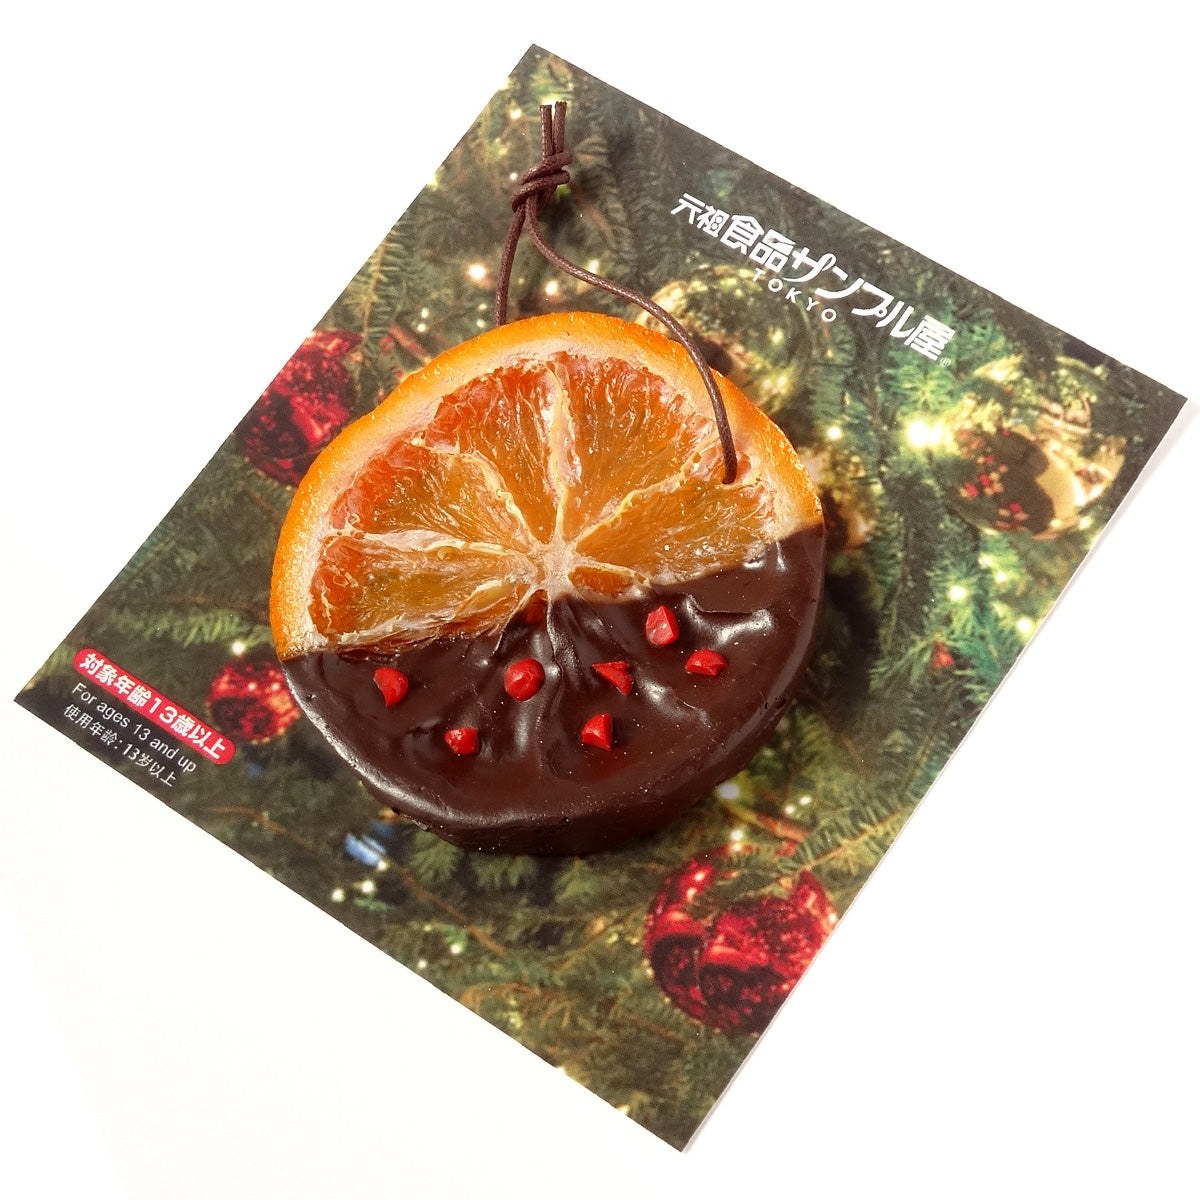 これは元祖食品サンプル屋【クリスマス限定】ヨーロッパ菓子のオーナメントオレンジの商品写真です。